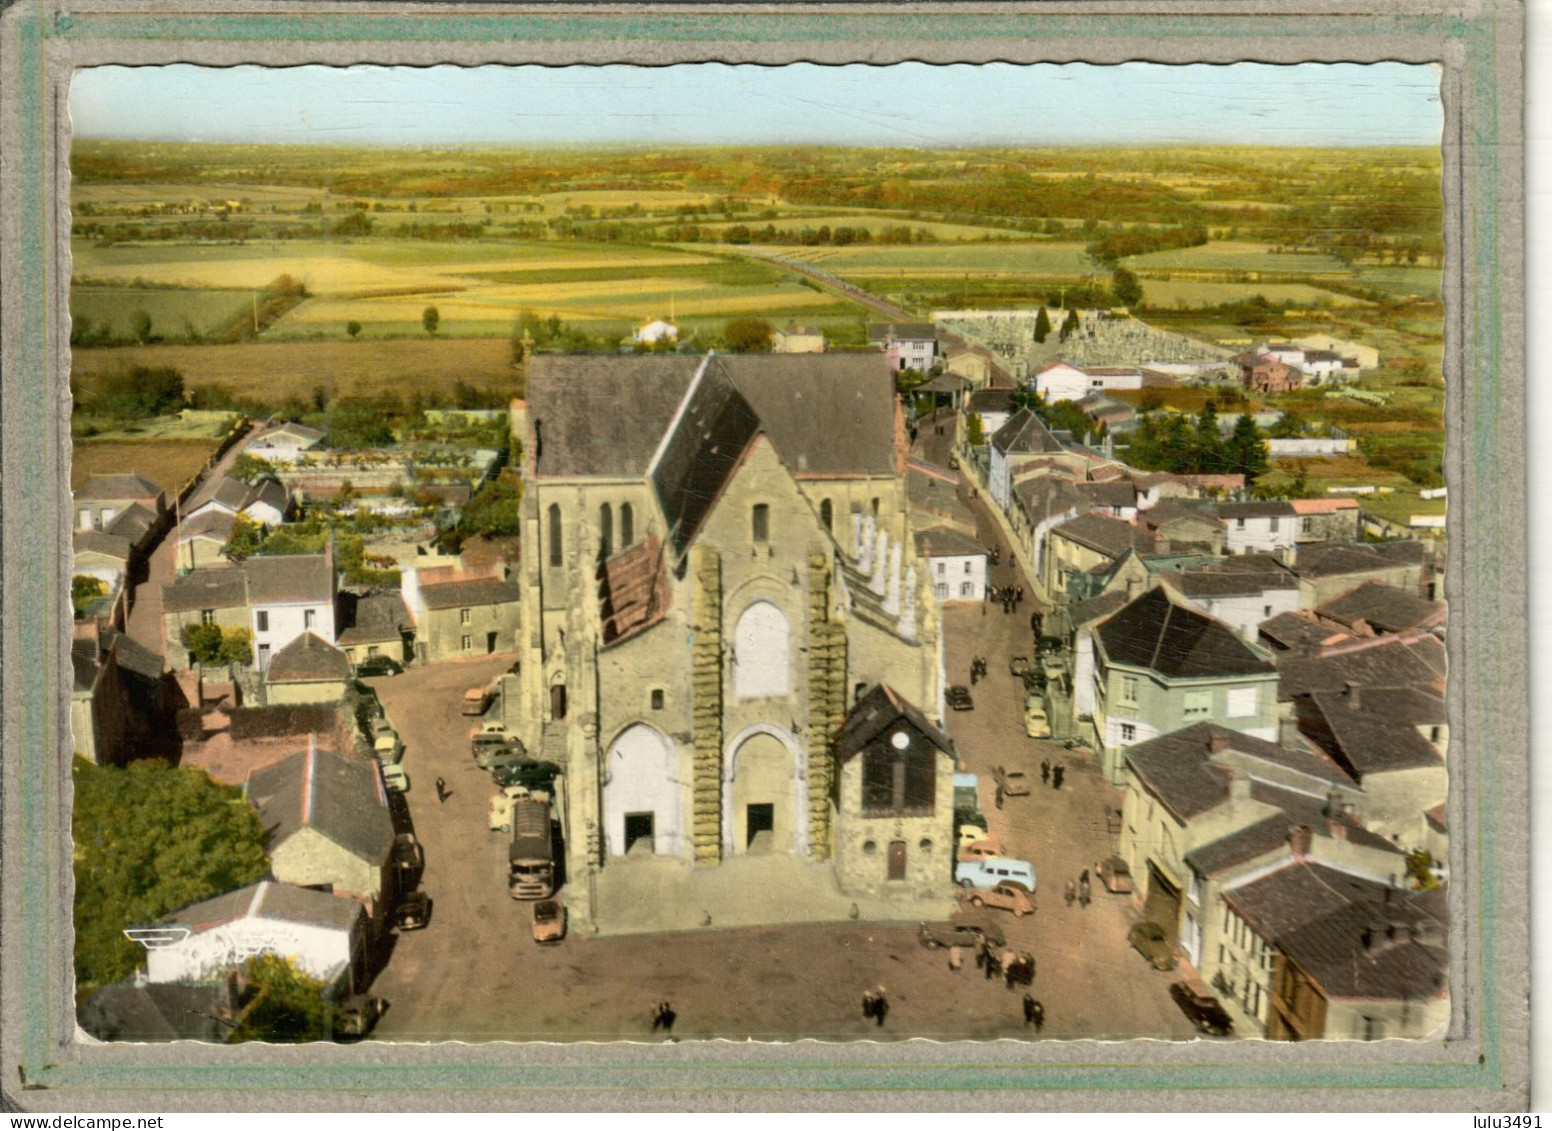 CPSM Dentelée (44) BOUSSAY - Le Quartier De L' Eglise En Vue Du Ciel  (aérienne) En 1967 - Boussay